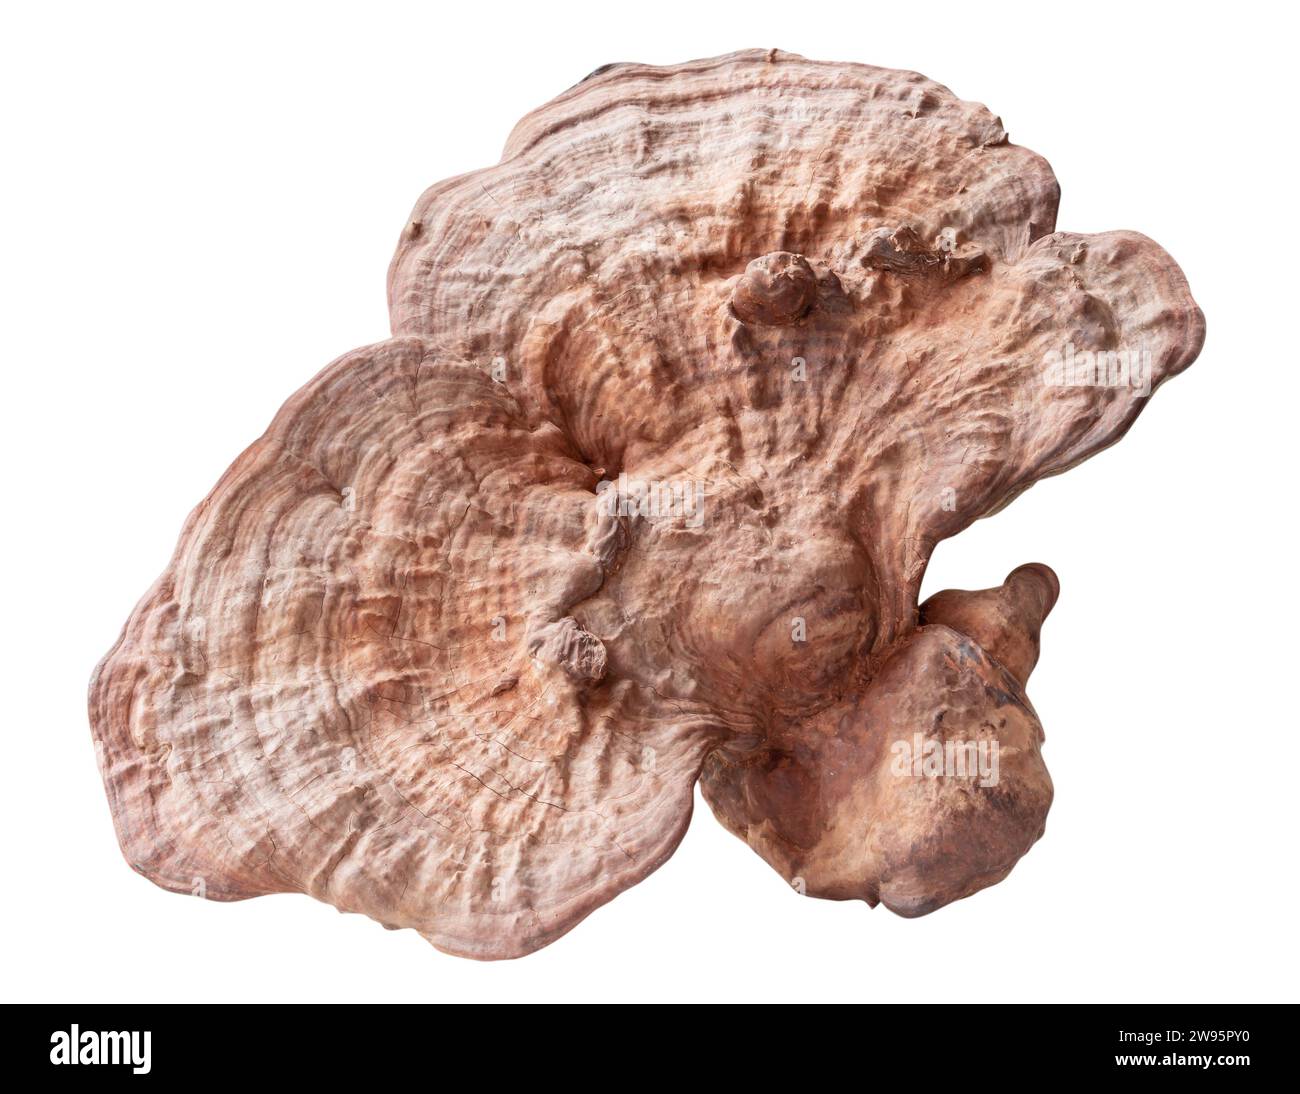 Il fungo reishi asciutto grande e utile è isolato su sfondo bianco con percorso di ritaglio. Fungo di medicina cinese Foto Stock